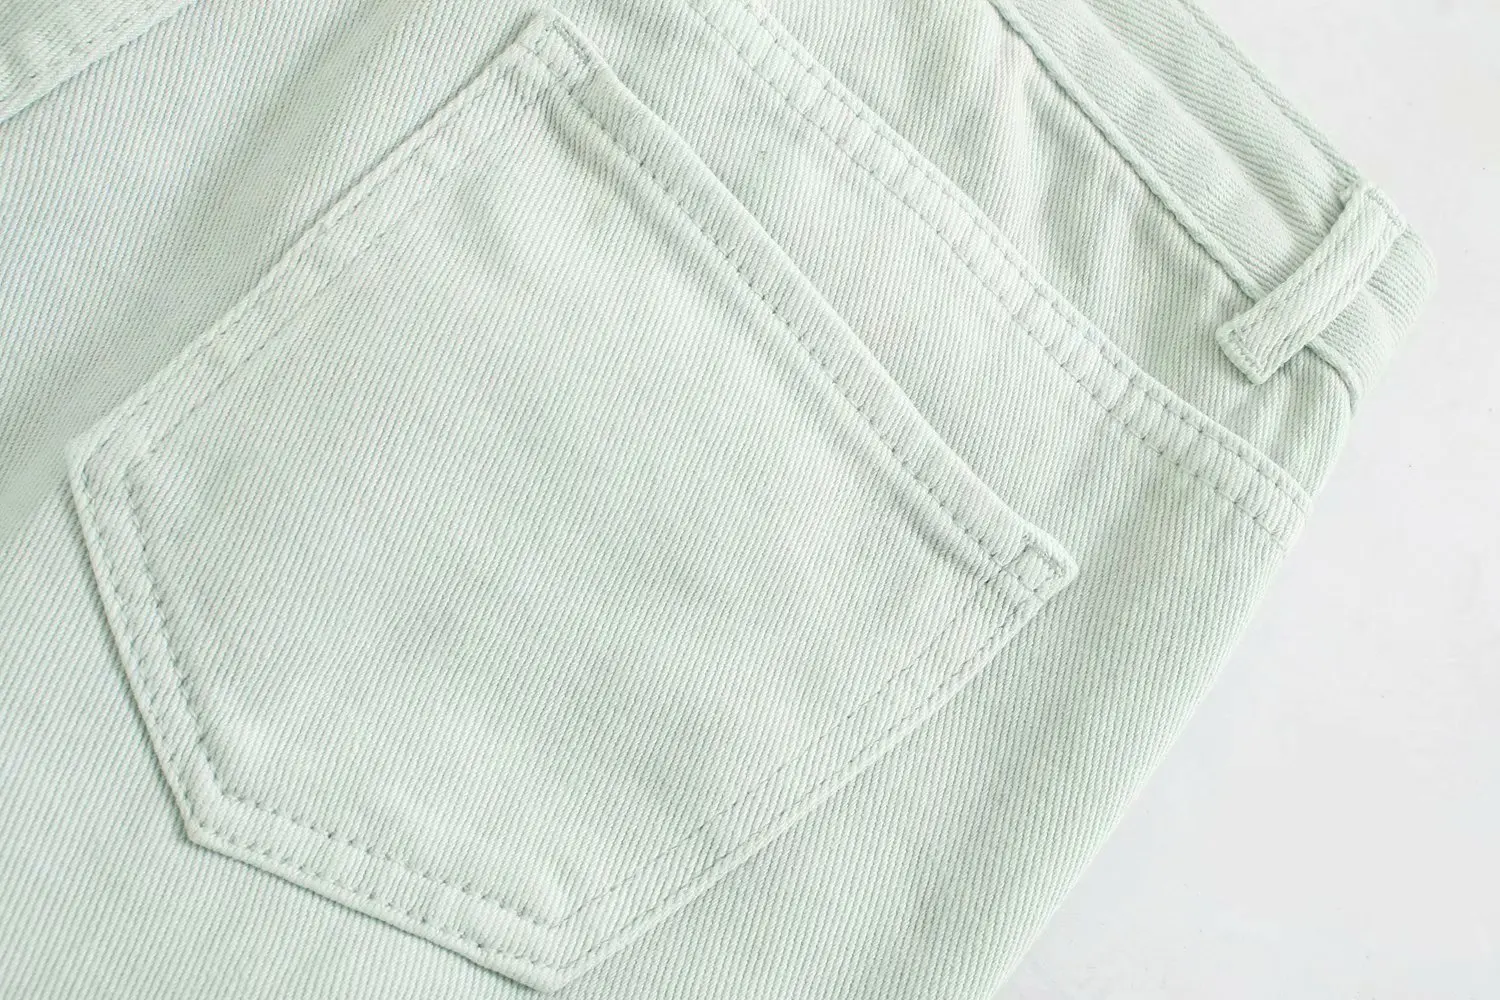 Toppies 2020 mode lys grøn denim bukser dame harem bukser med høj talje løse bukser streetwear